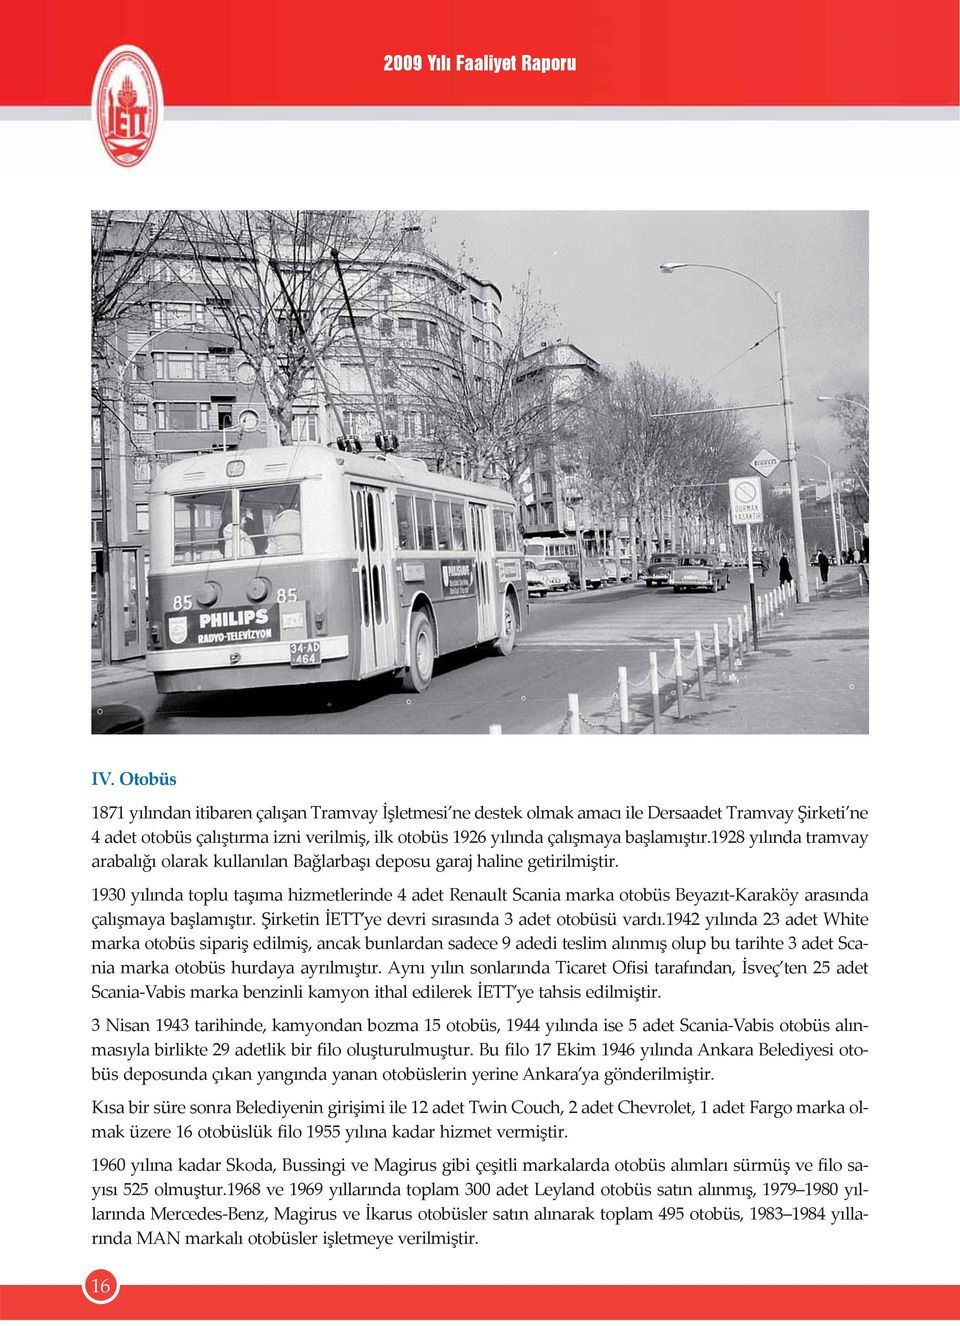 1930 yılında toplu taşıma hizmetlerinde 4 adet Renault Scania marka otobüs Beyazıt-Karaköy arasında çalışmaya başlamıştır. Şirketin İETT ye devri sırasında 3 adet otobüsü vardı.